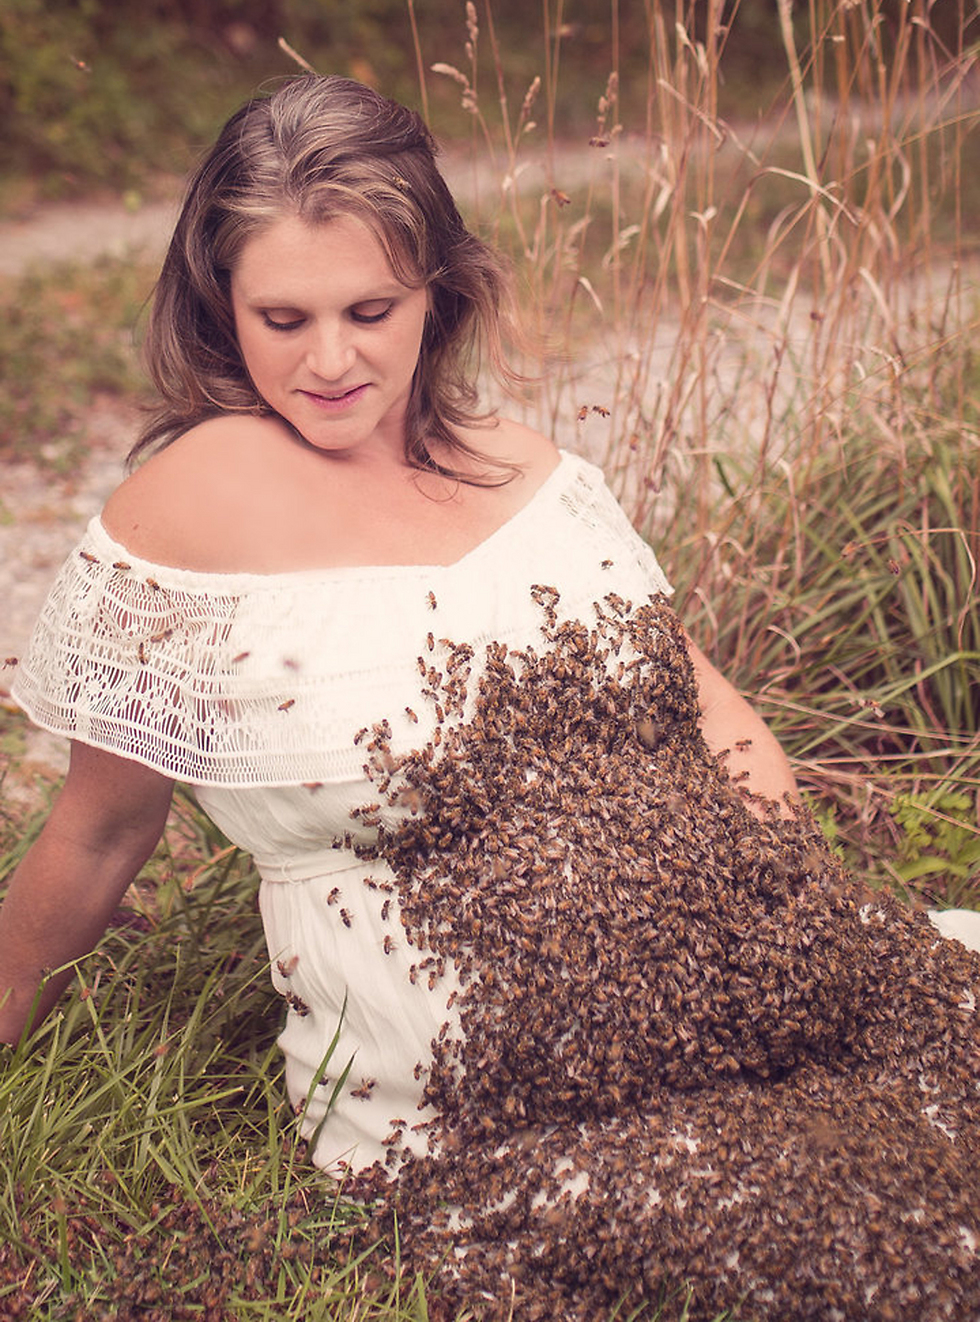 אמילי והדבורים בתמונות שצילמה קנדרה דמיס ()